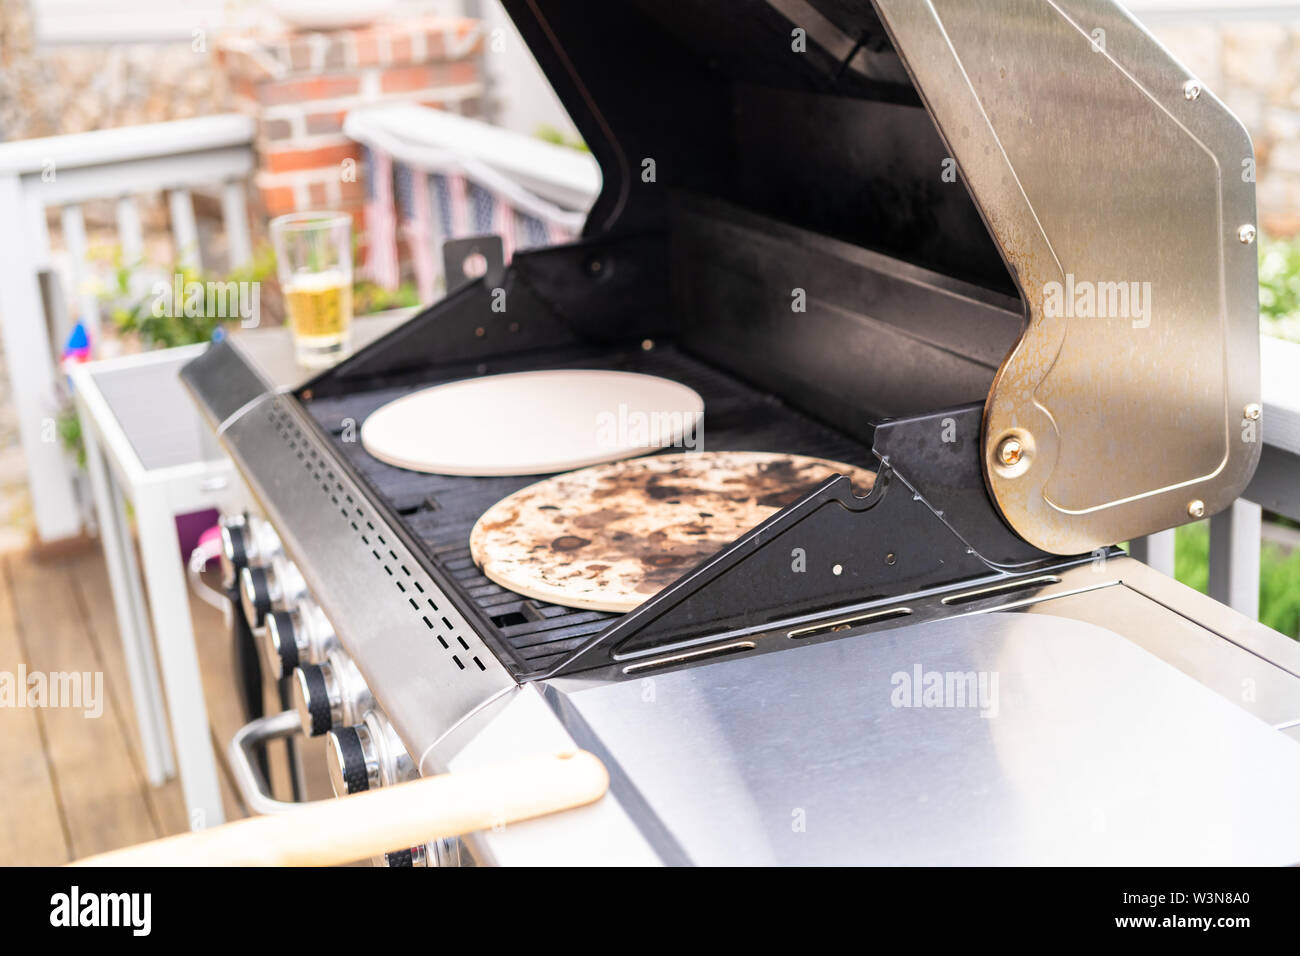 Vorglühen pizza Steine auf einen Outdoor Gas Grill Stockfotografie - Alamy